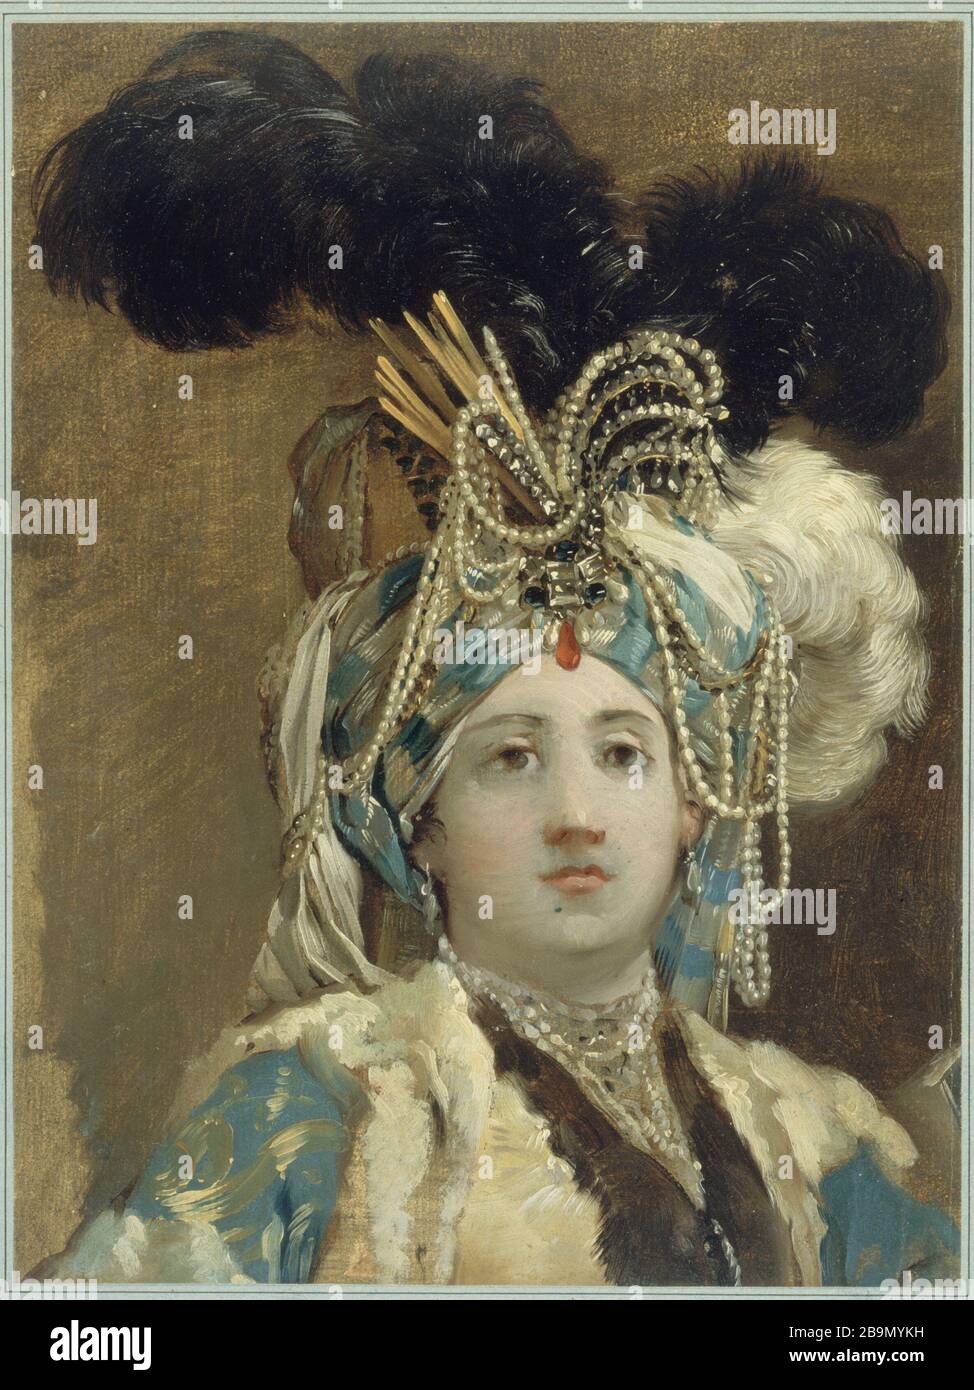 Reine sultana Joseph-Marie Vien (1716-1809). 'sultane reine'. Musée des Beaux-Arts de la Ville de Paris, petit Palais. Banque D'Images